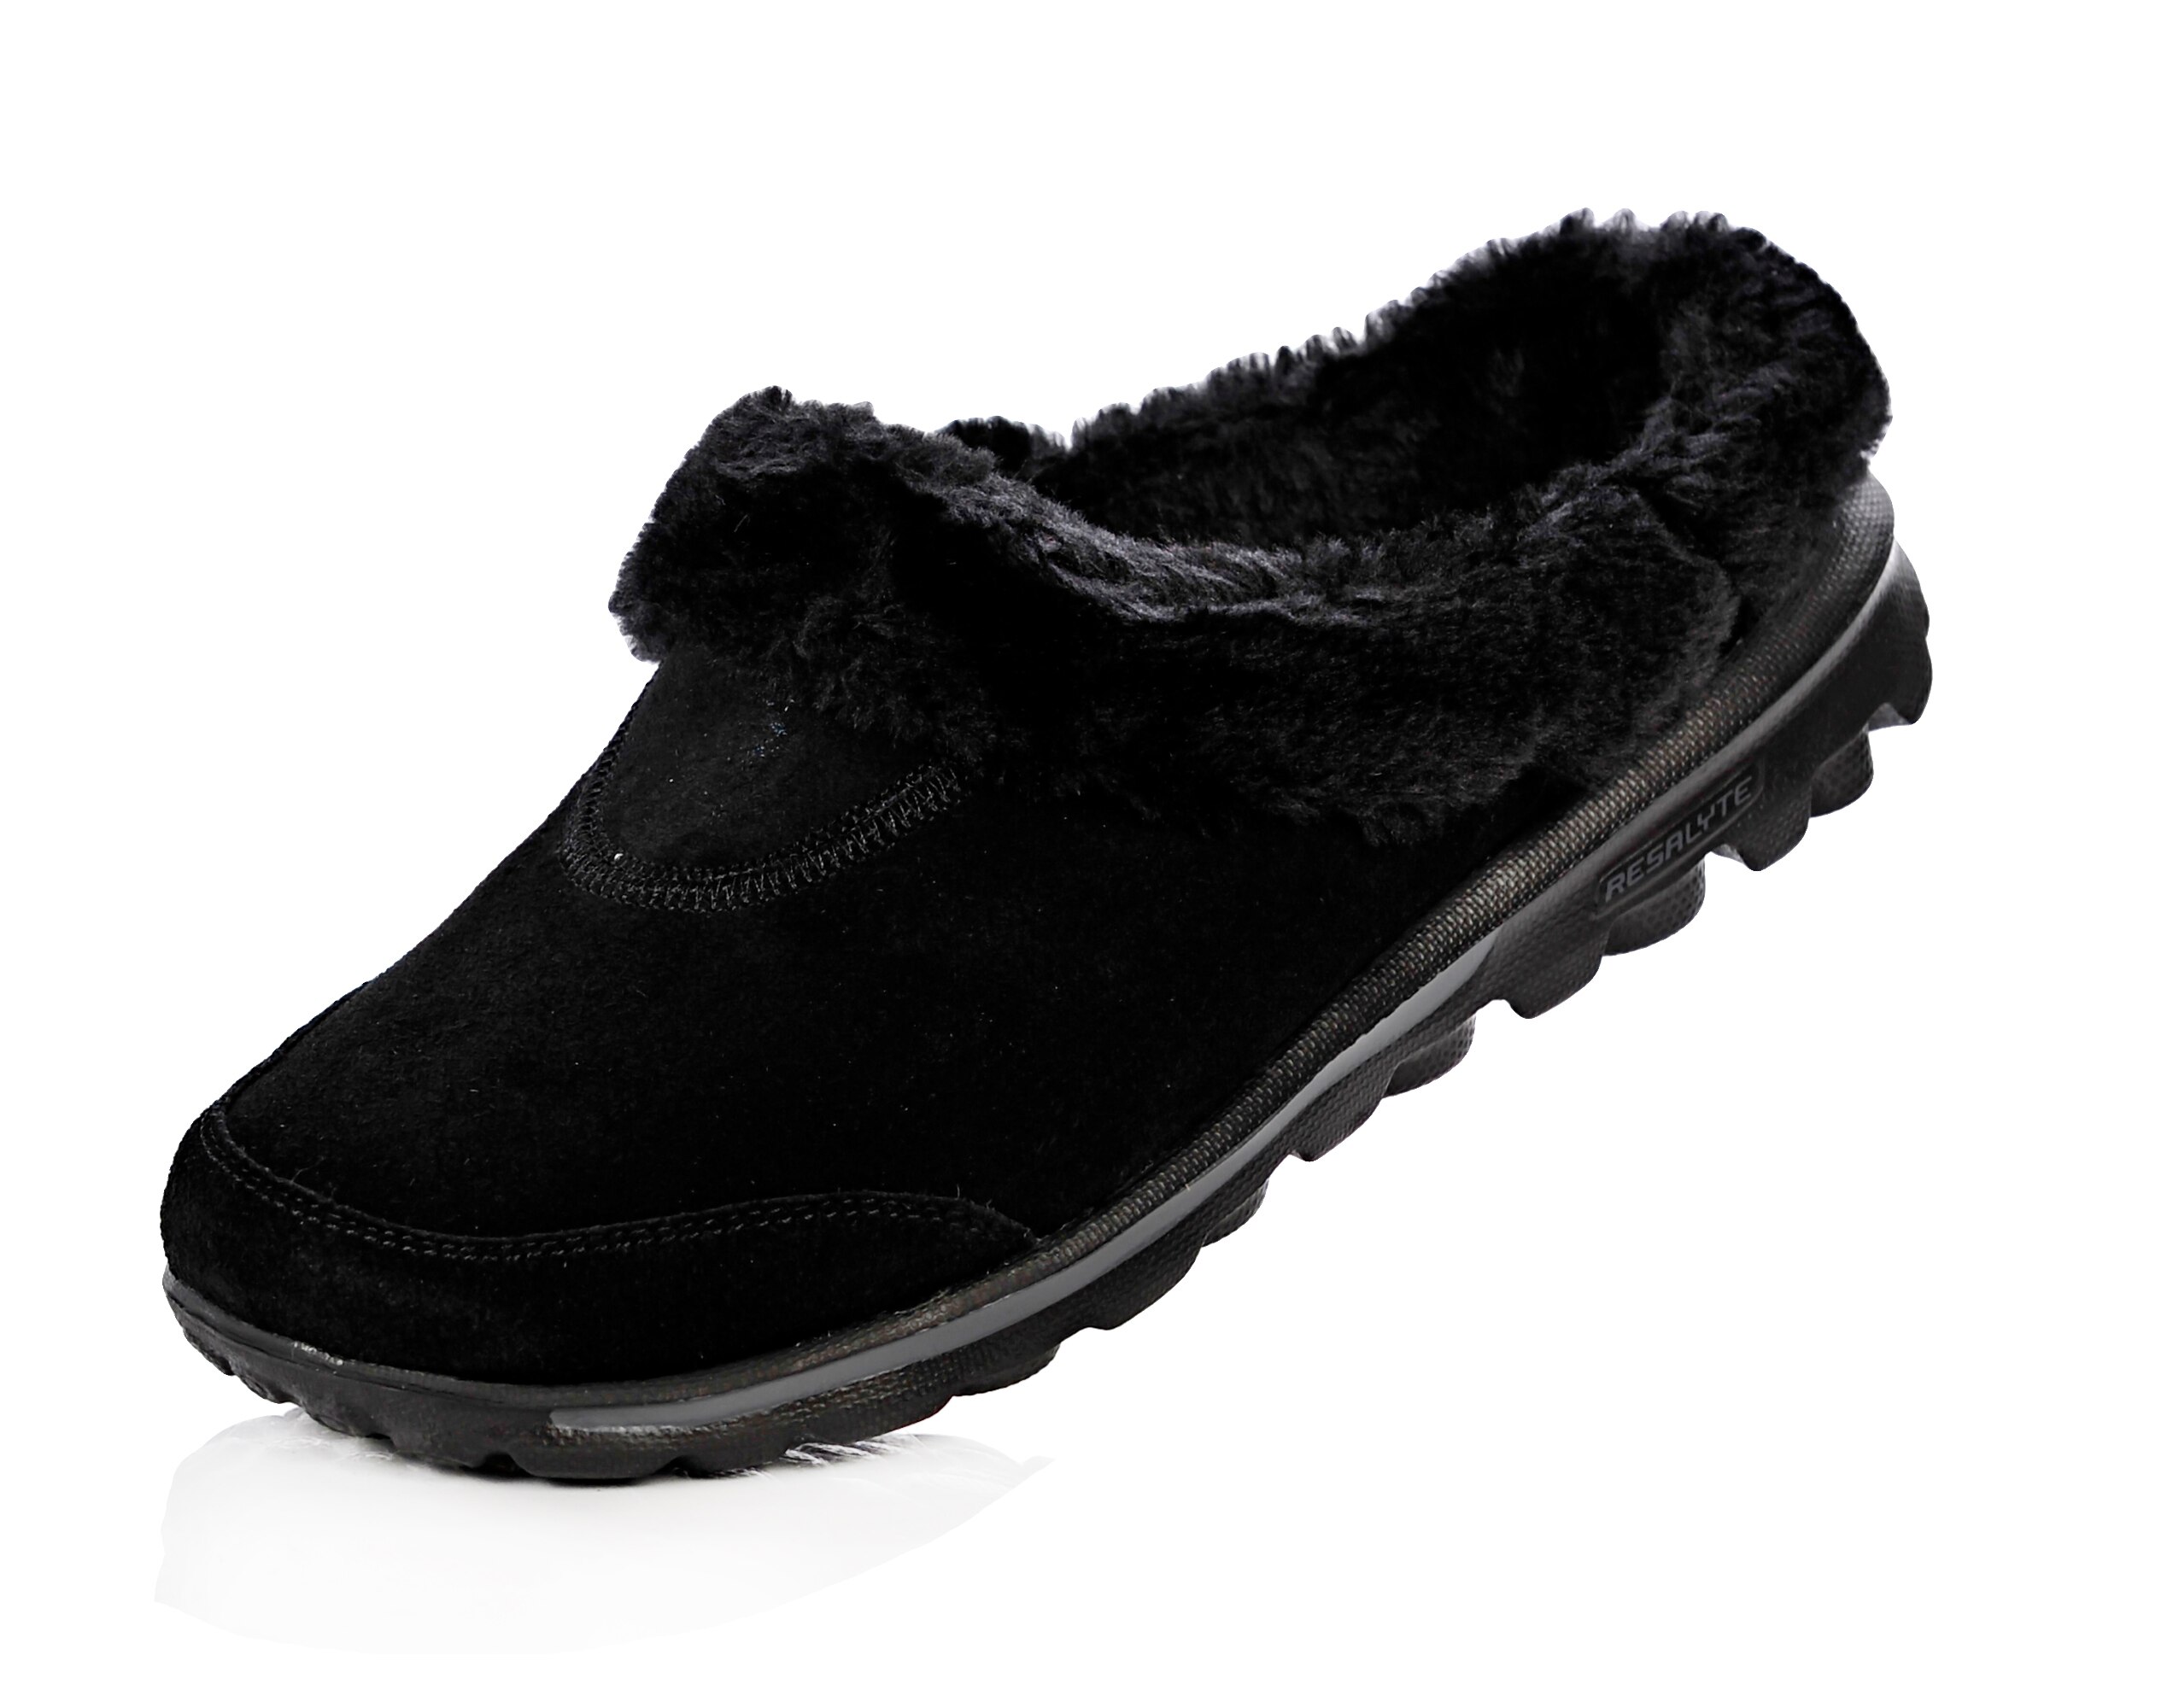 skechers gowalk suede faux fur shoes